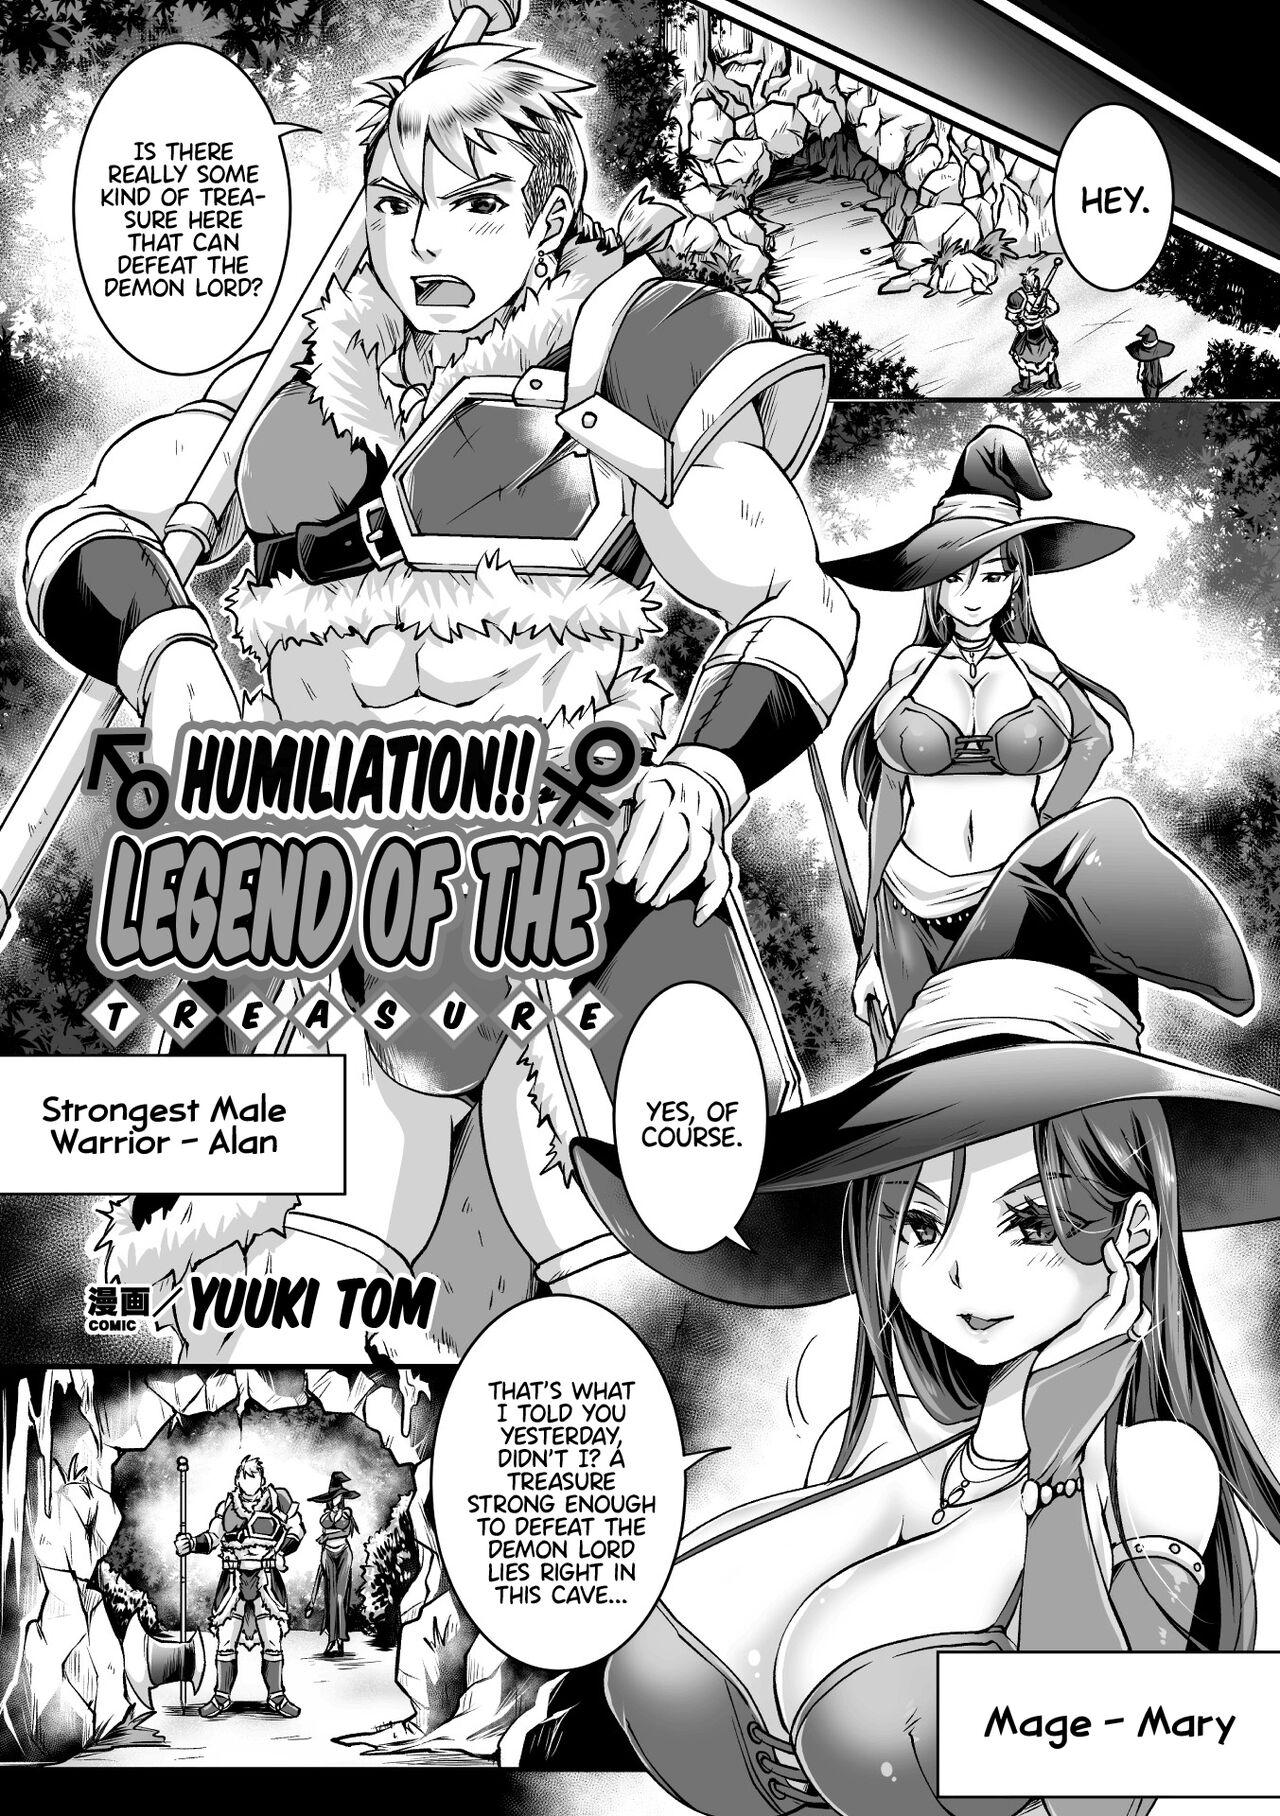 2D Comic Magazine Mesu Ochi! TS Ero Trap Dungeon Vol. 2 23